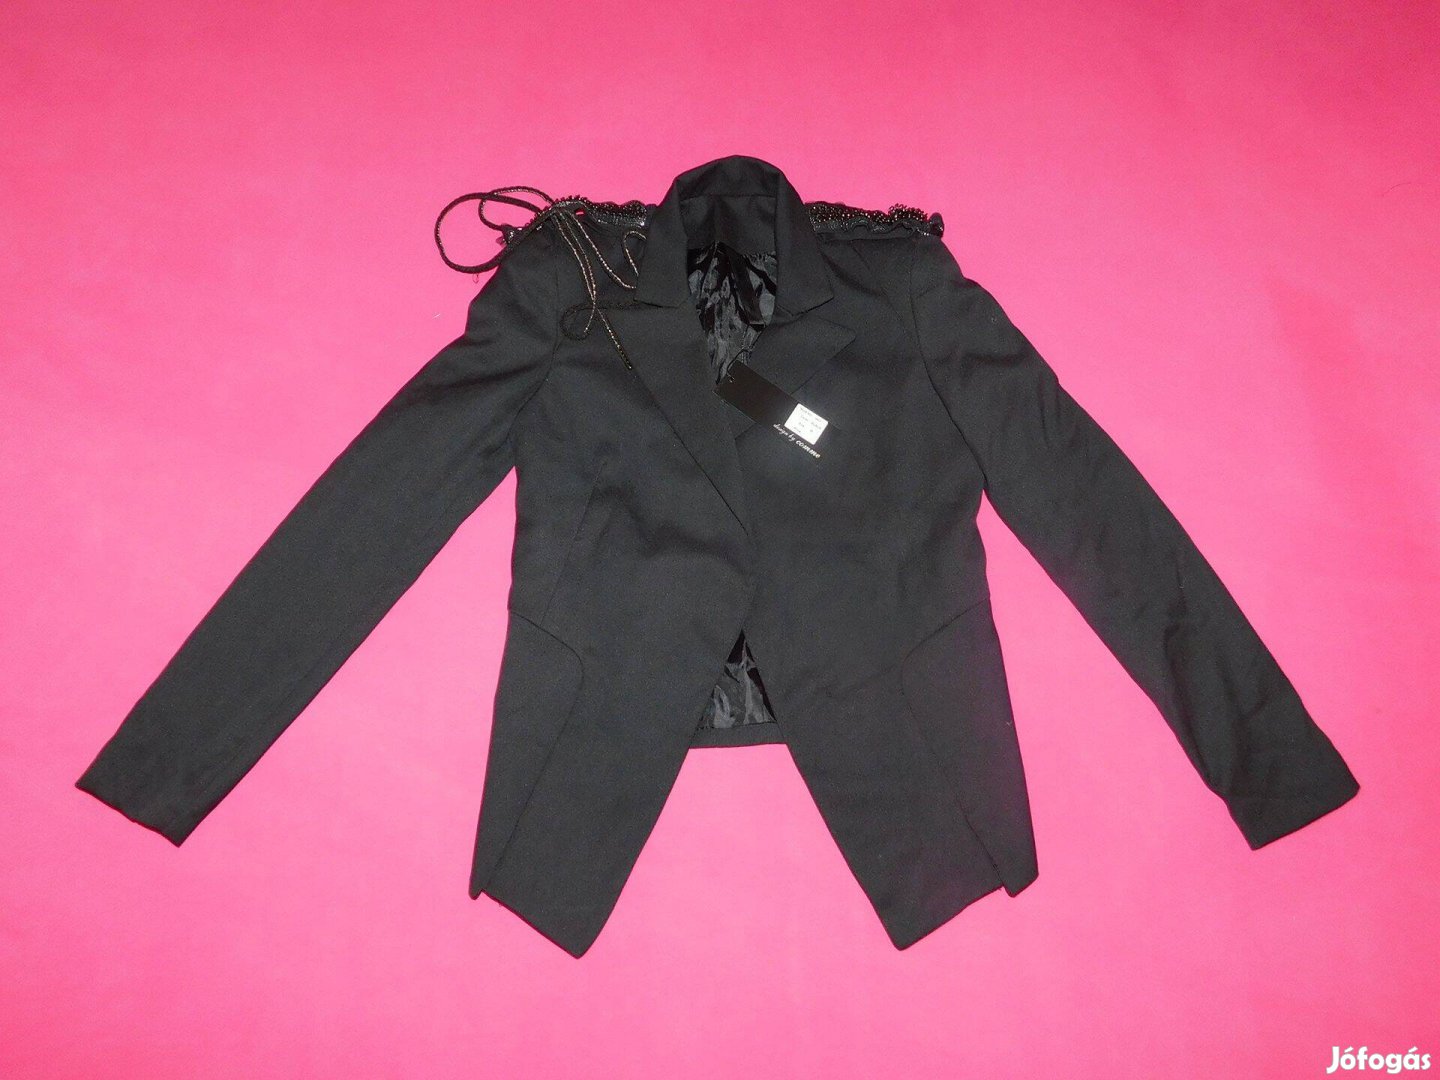 Új, címkés Comme fekete, válldíszes női zakó, kabát, blézer, M-es